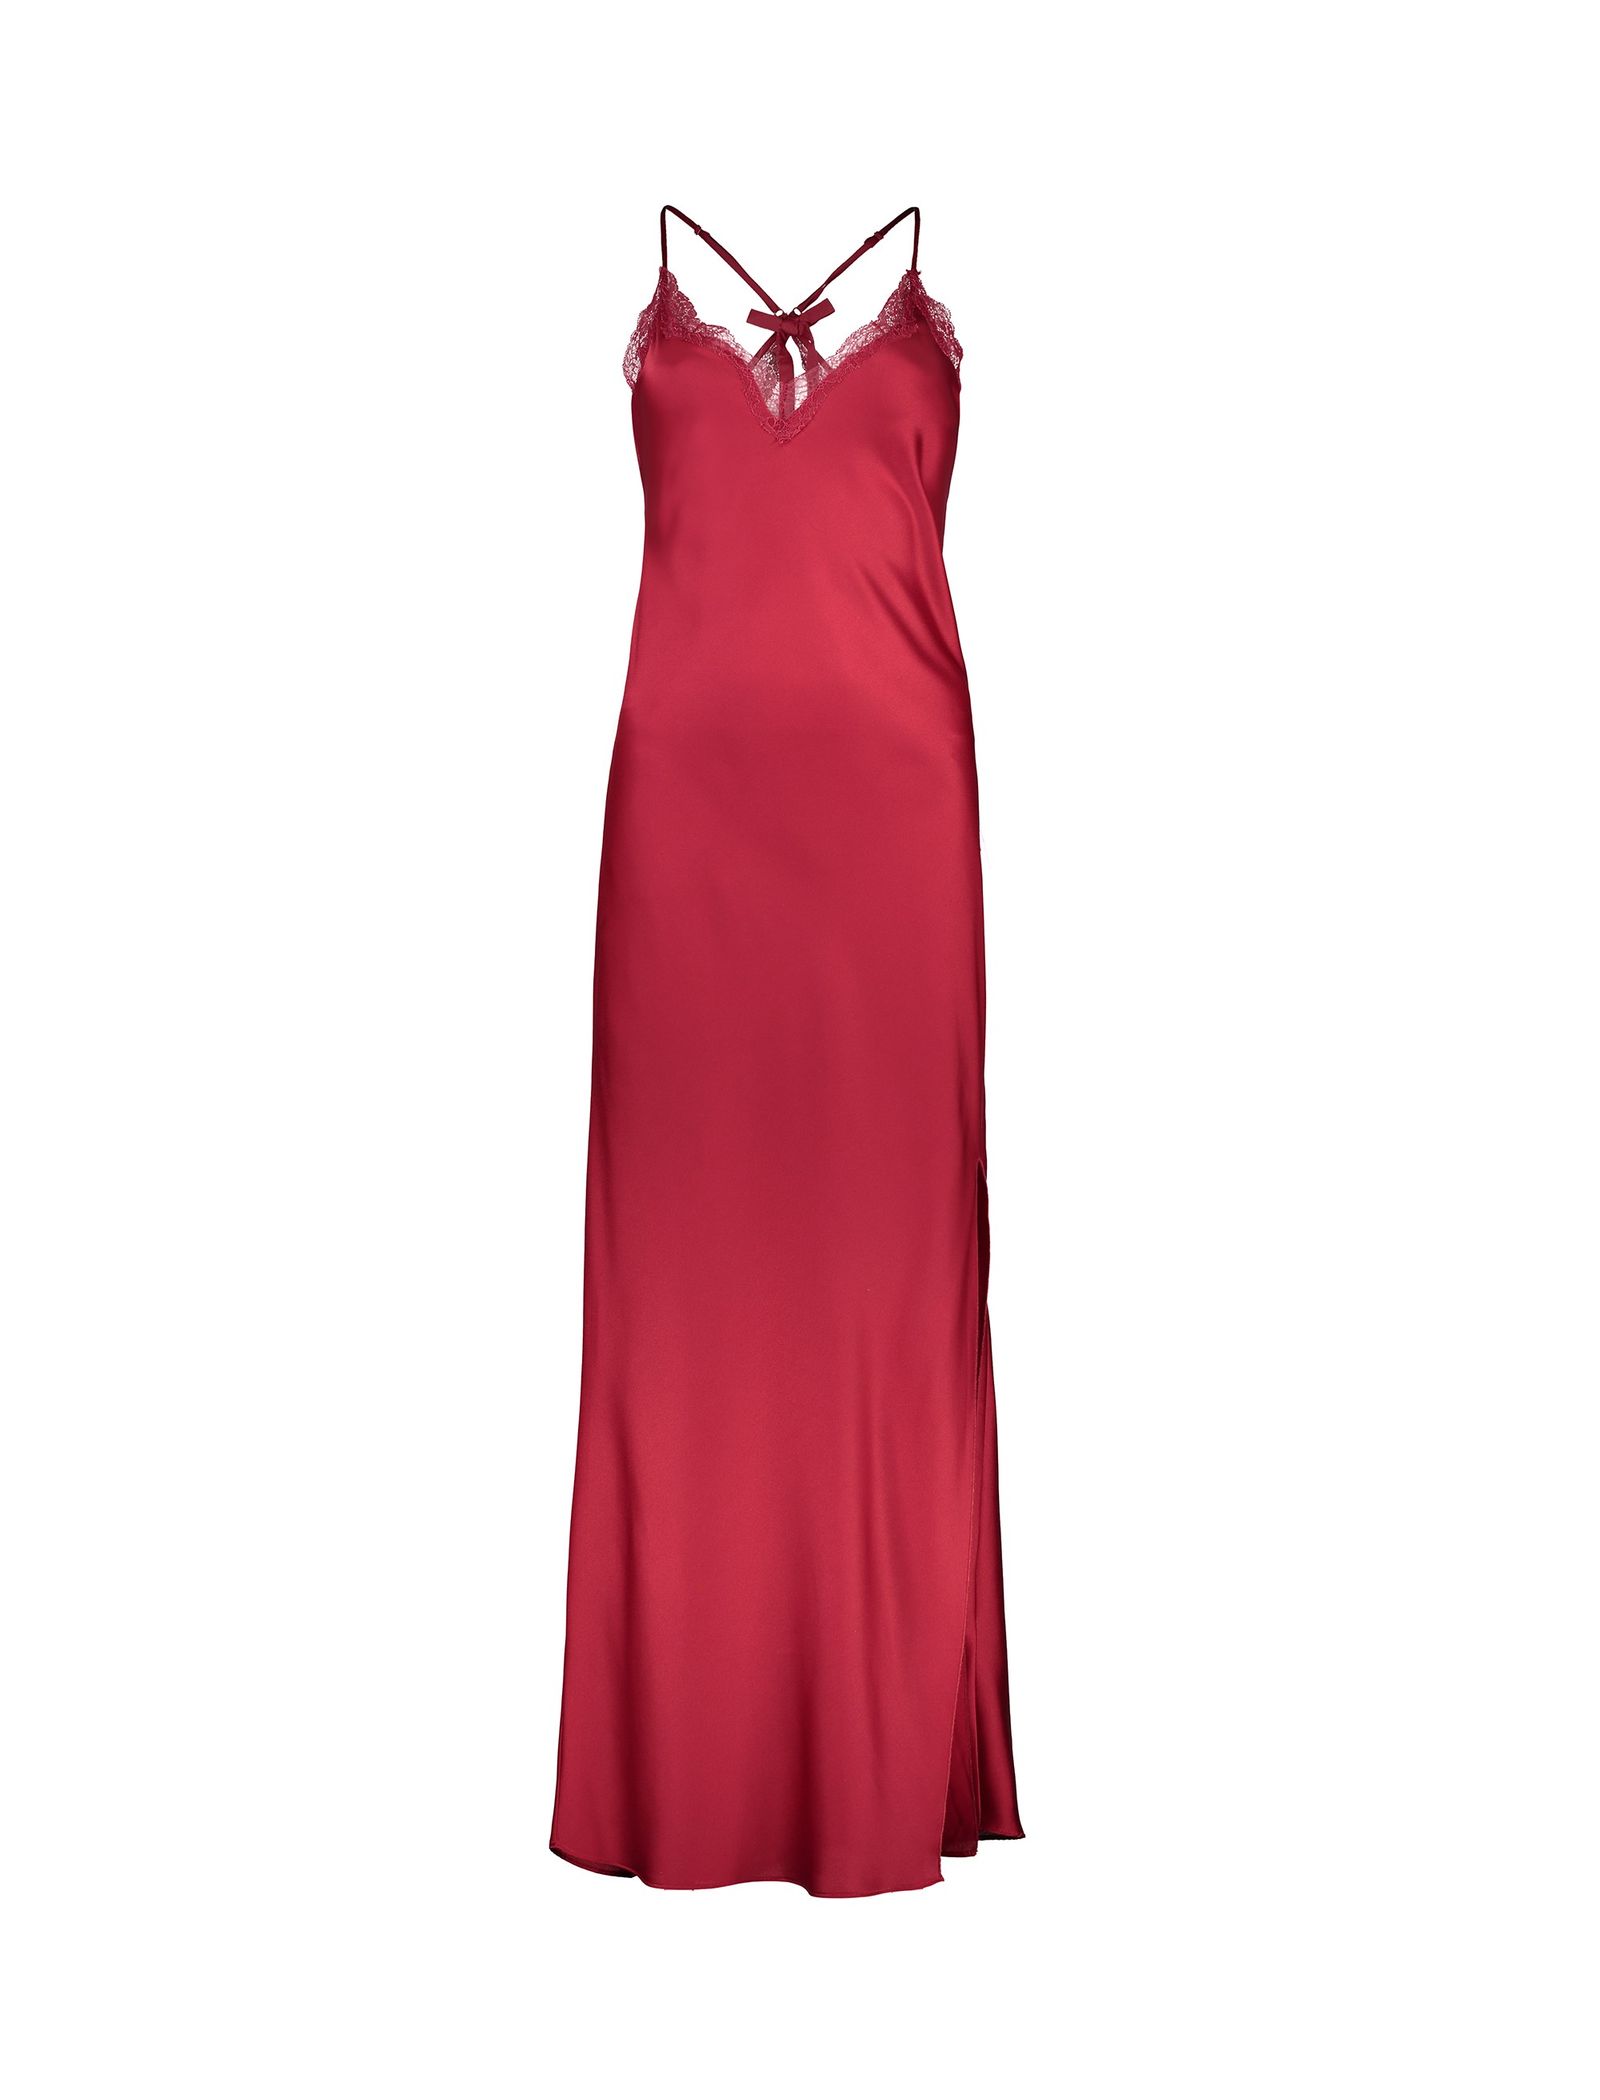 لباس خواب بلند زنانه - اتام - قرمز - 2